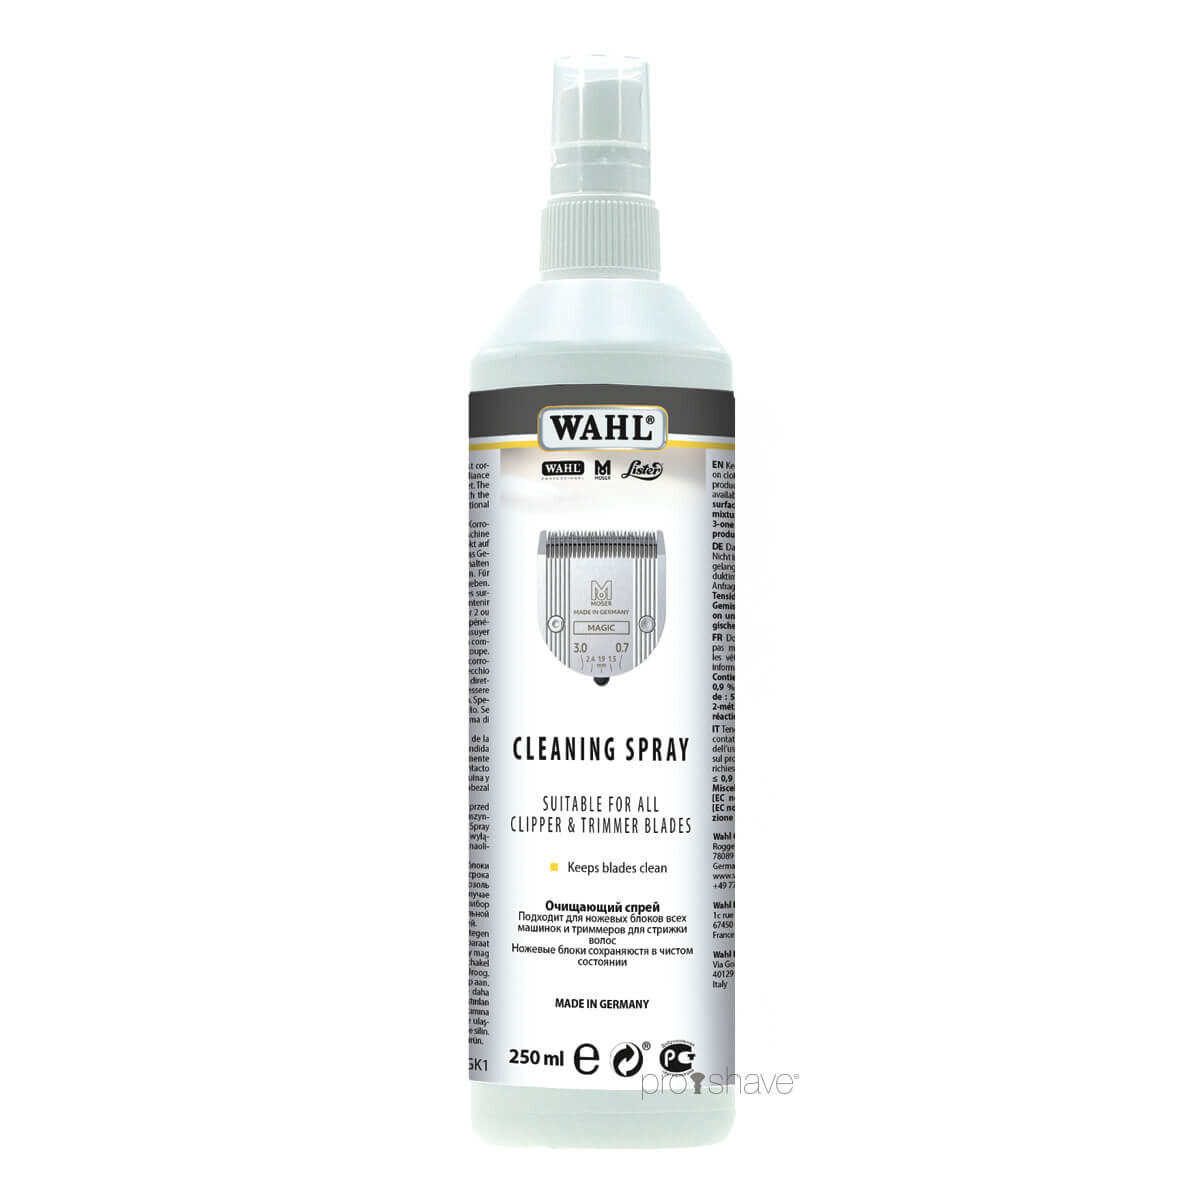 Billede af Wahl Professional Cleaning Spray, 250 ml. hos Proshave